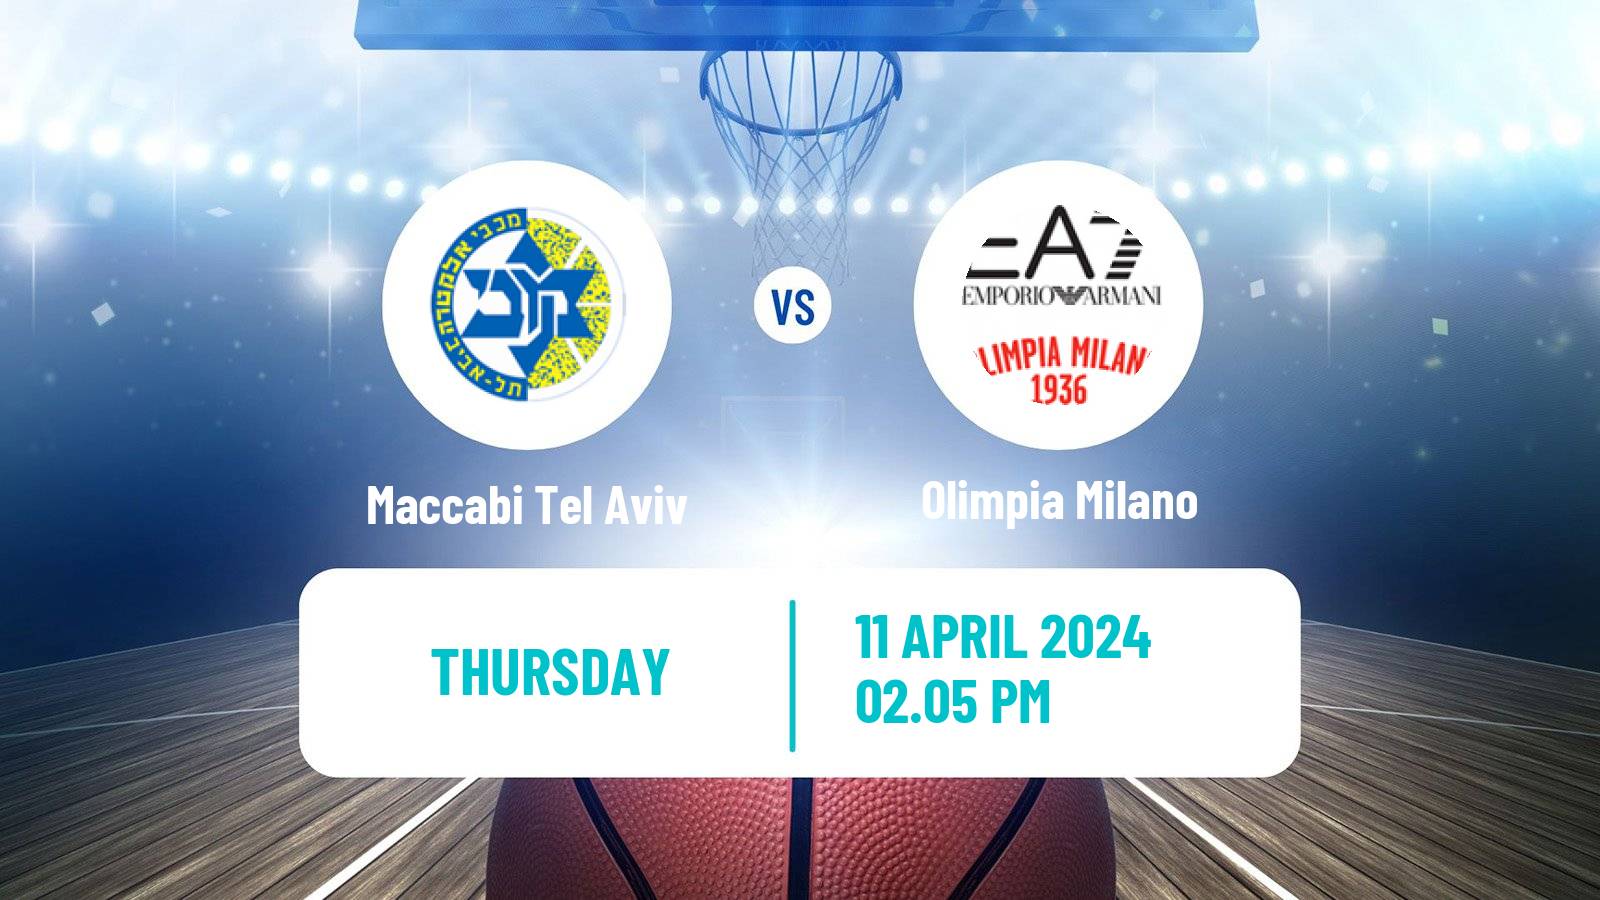 Basketball Euroleague Maccabi Tel Aviv - Olimpia Milano